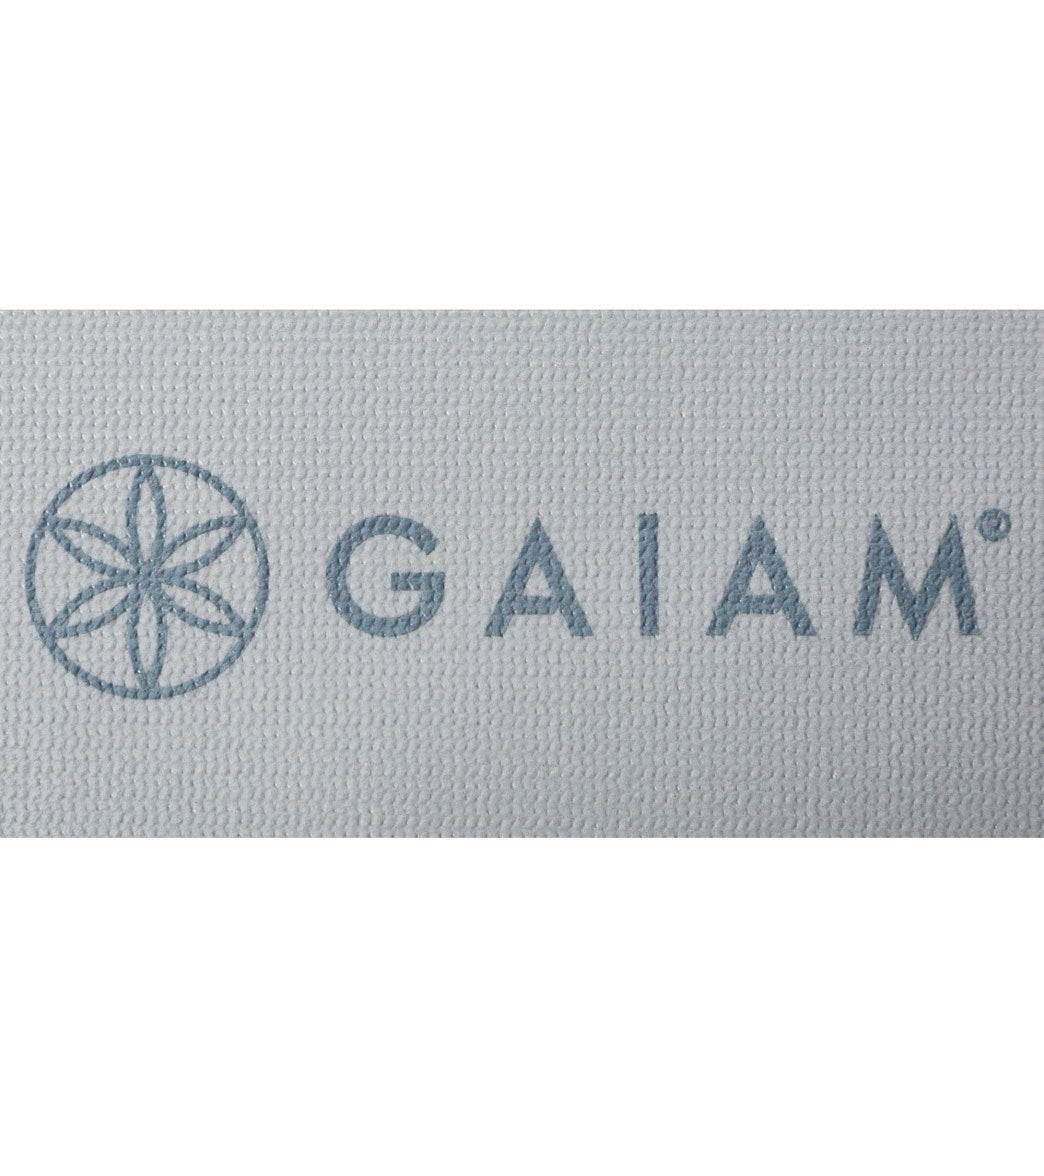 Gaiam Foldable Yoga Mat 68 2mm at